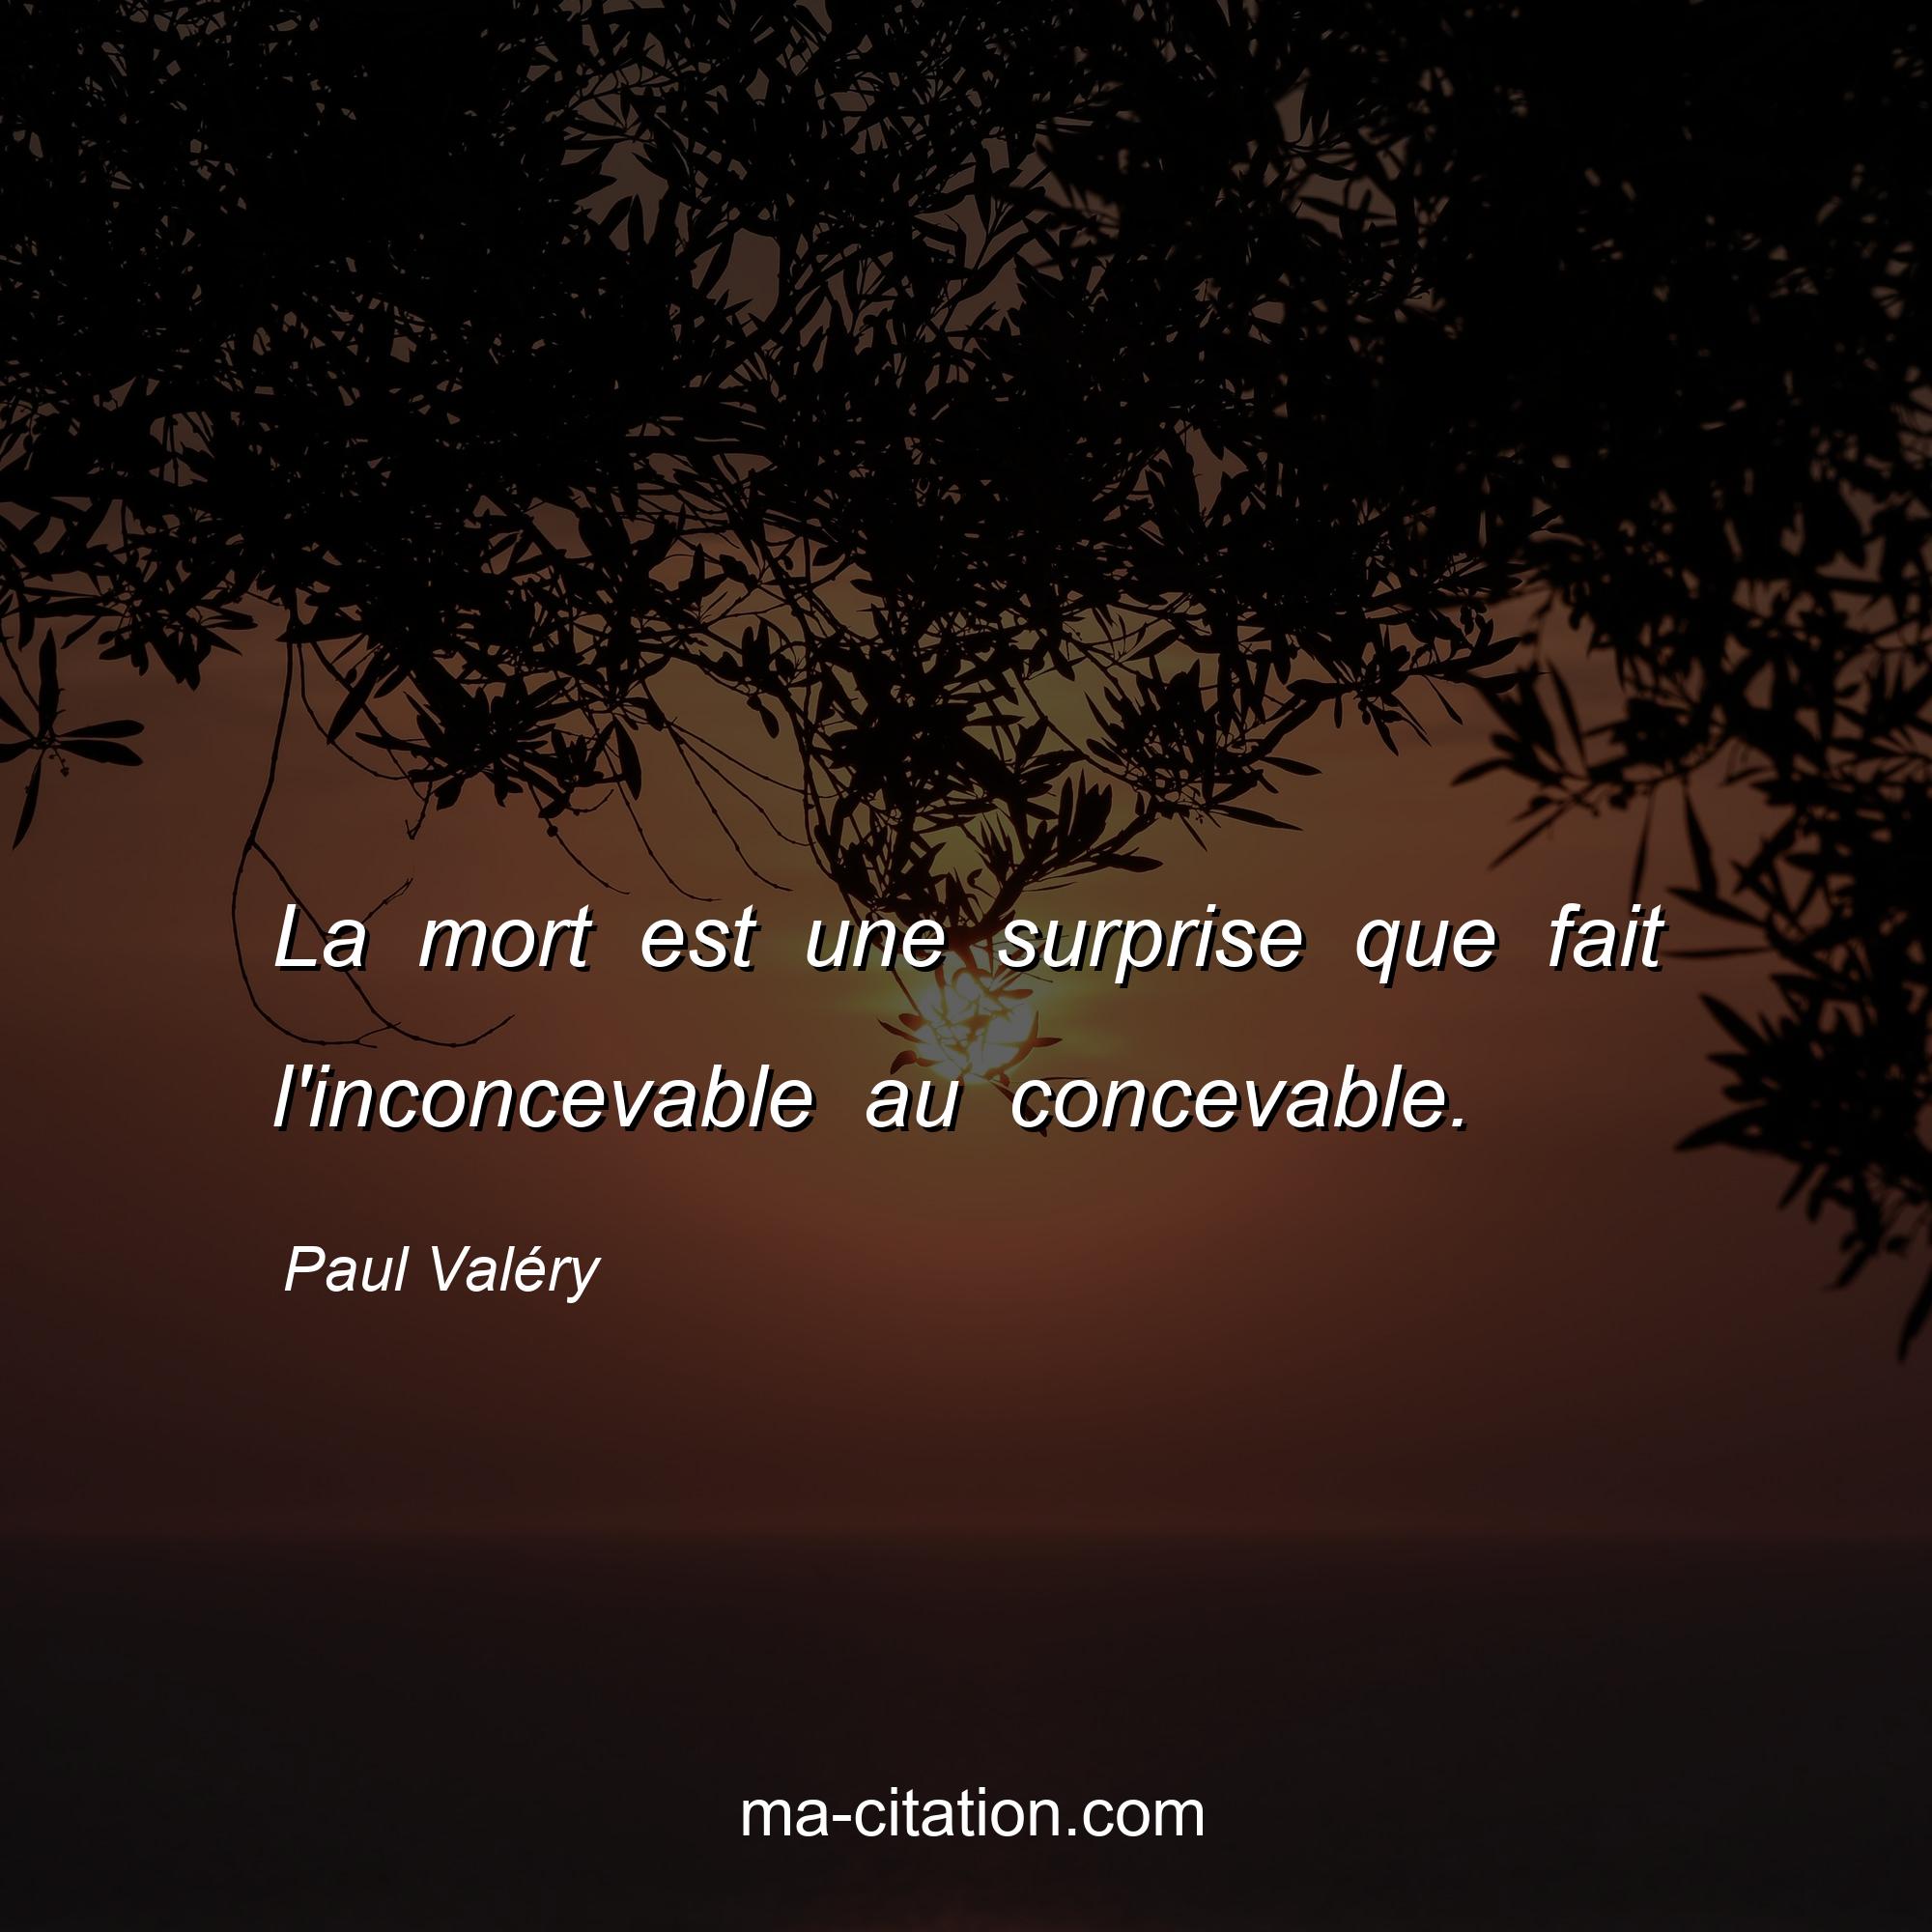 Paul Valéry : La mort est une surprise que fait l'inconcevable au concevable.